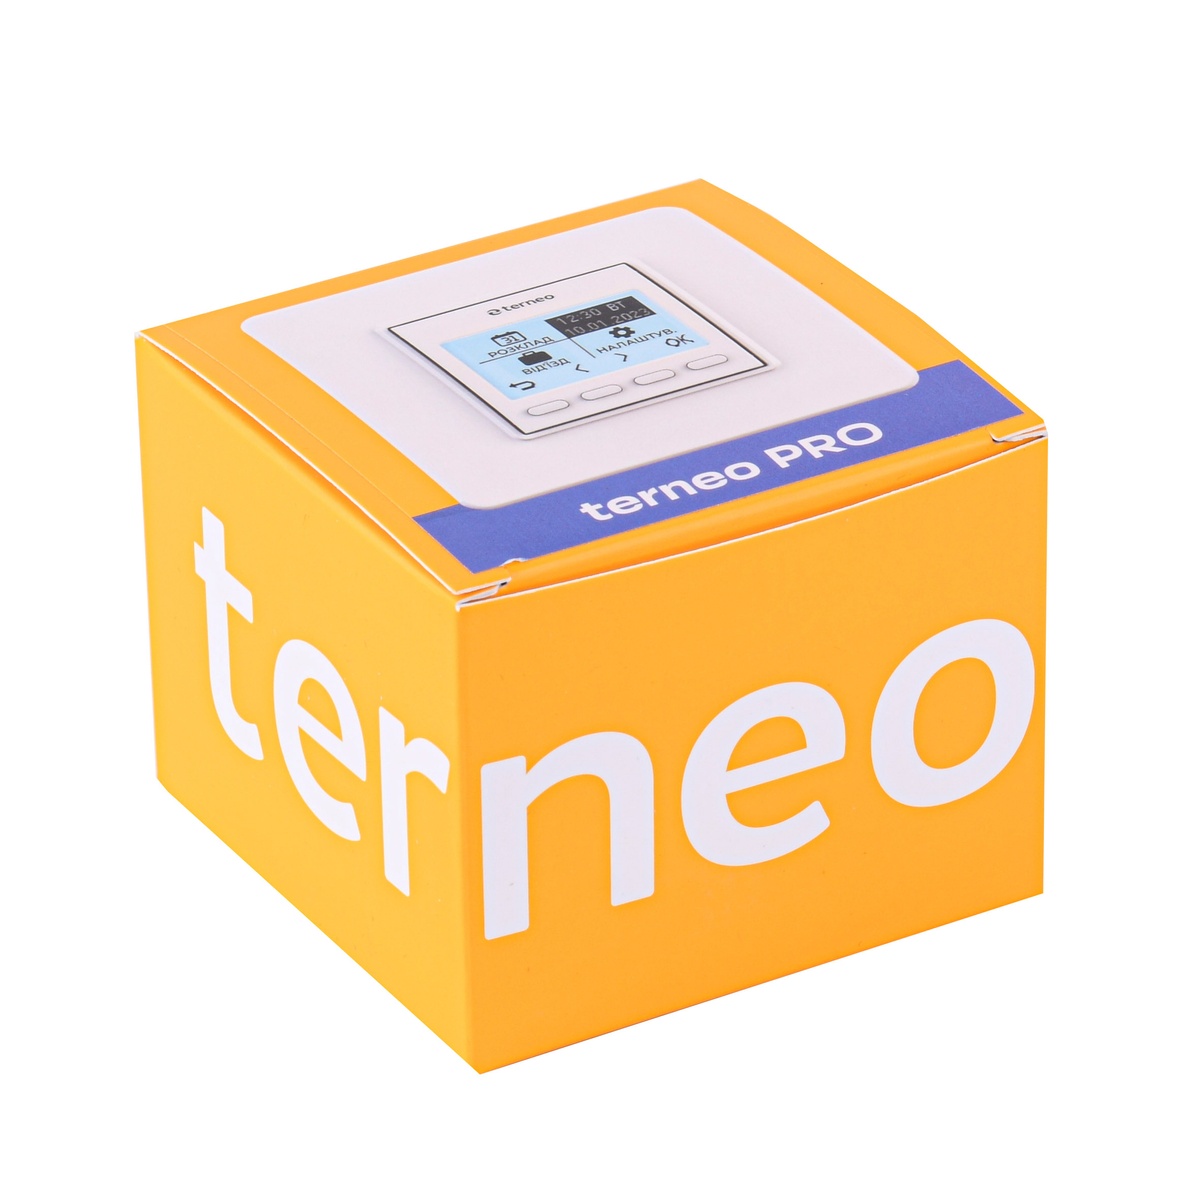 Комнатный терморегулятор TERNEO PRO механический с программированием 000027914